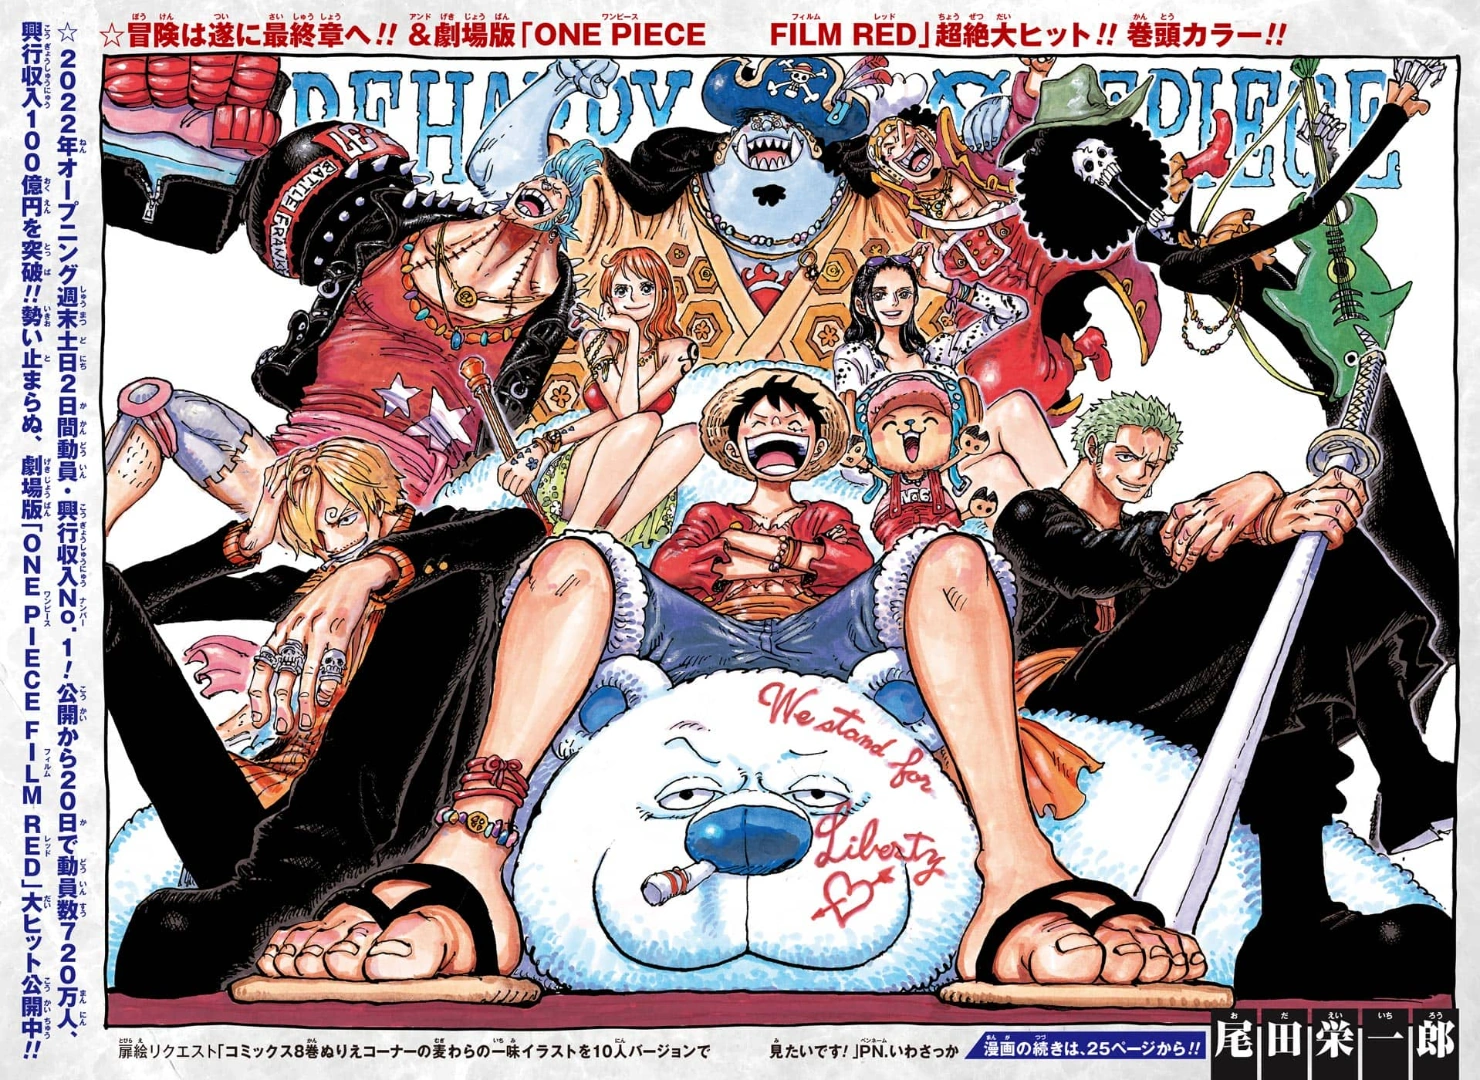 Los Siete Señores de la Guerra del Mar, One Piece Wiki